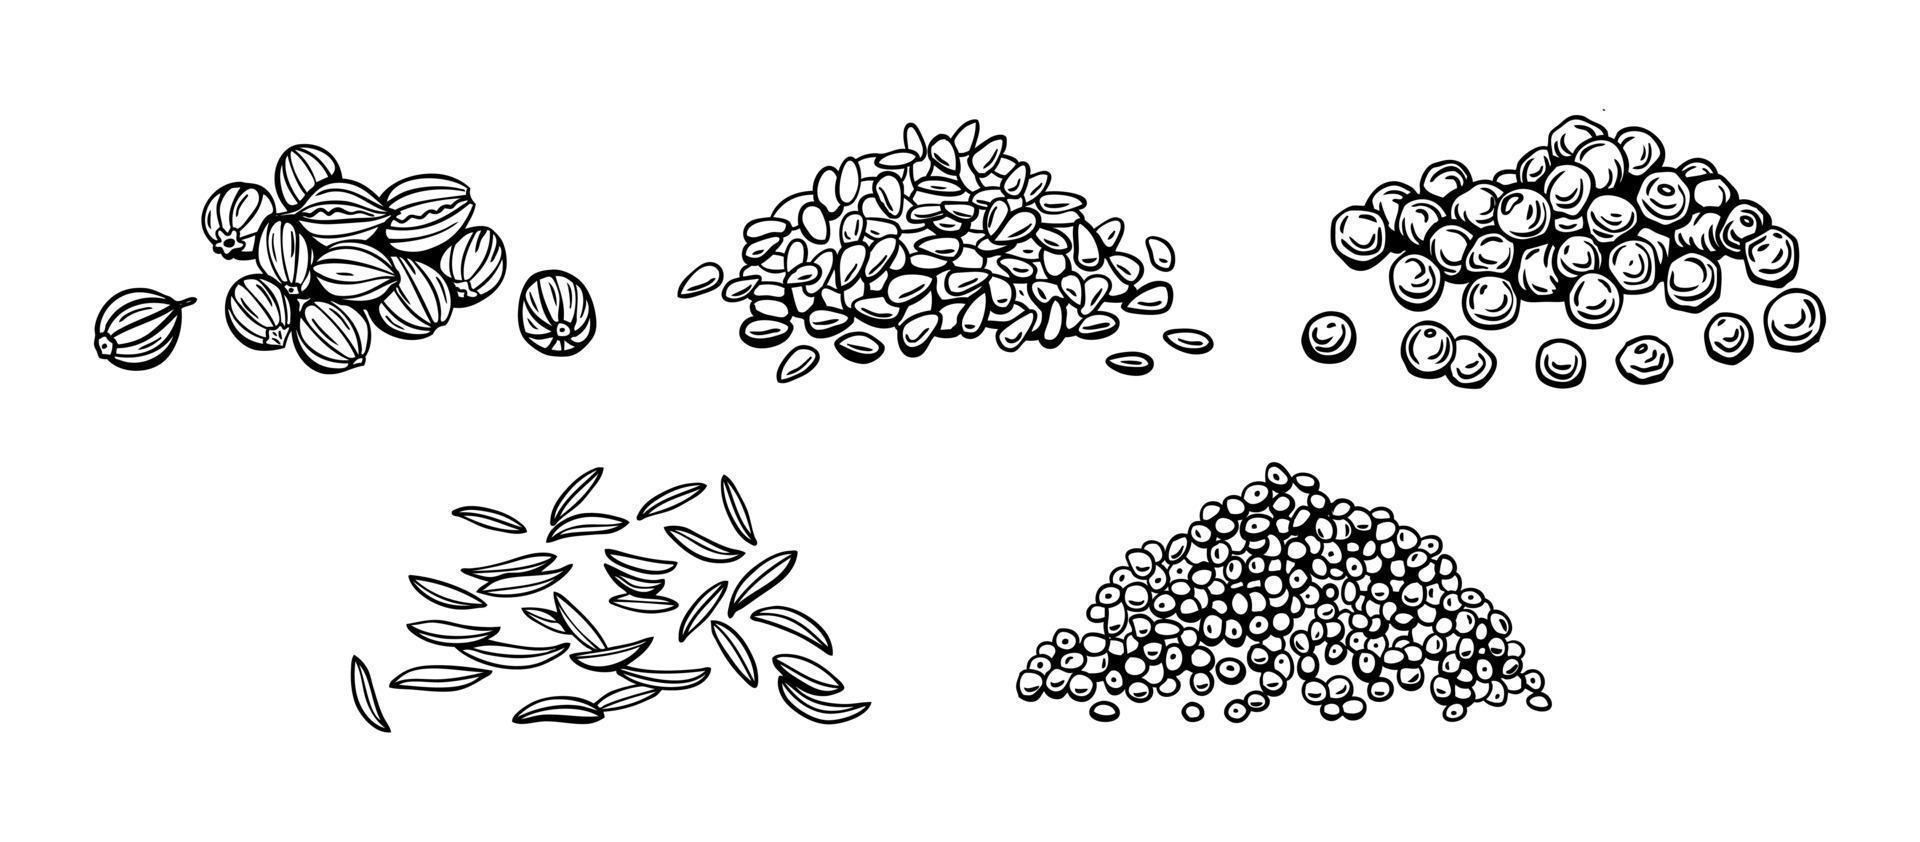 zaden van kruiderijen en kruiden, sesam, peper, papaver zaden, komijn, koriander. vector illustratie in handleiding tekening stijl